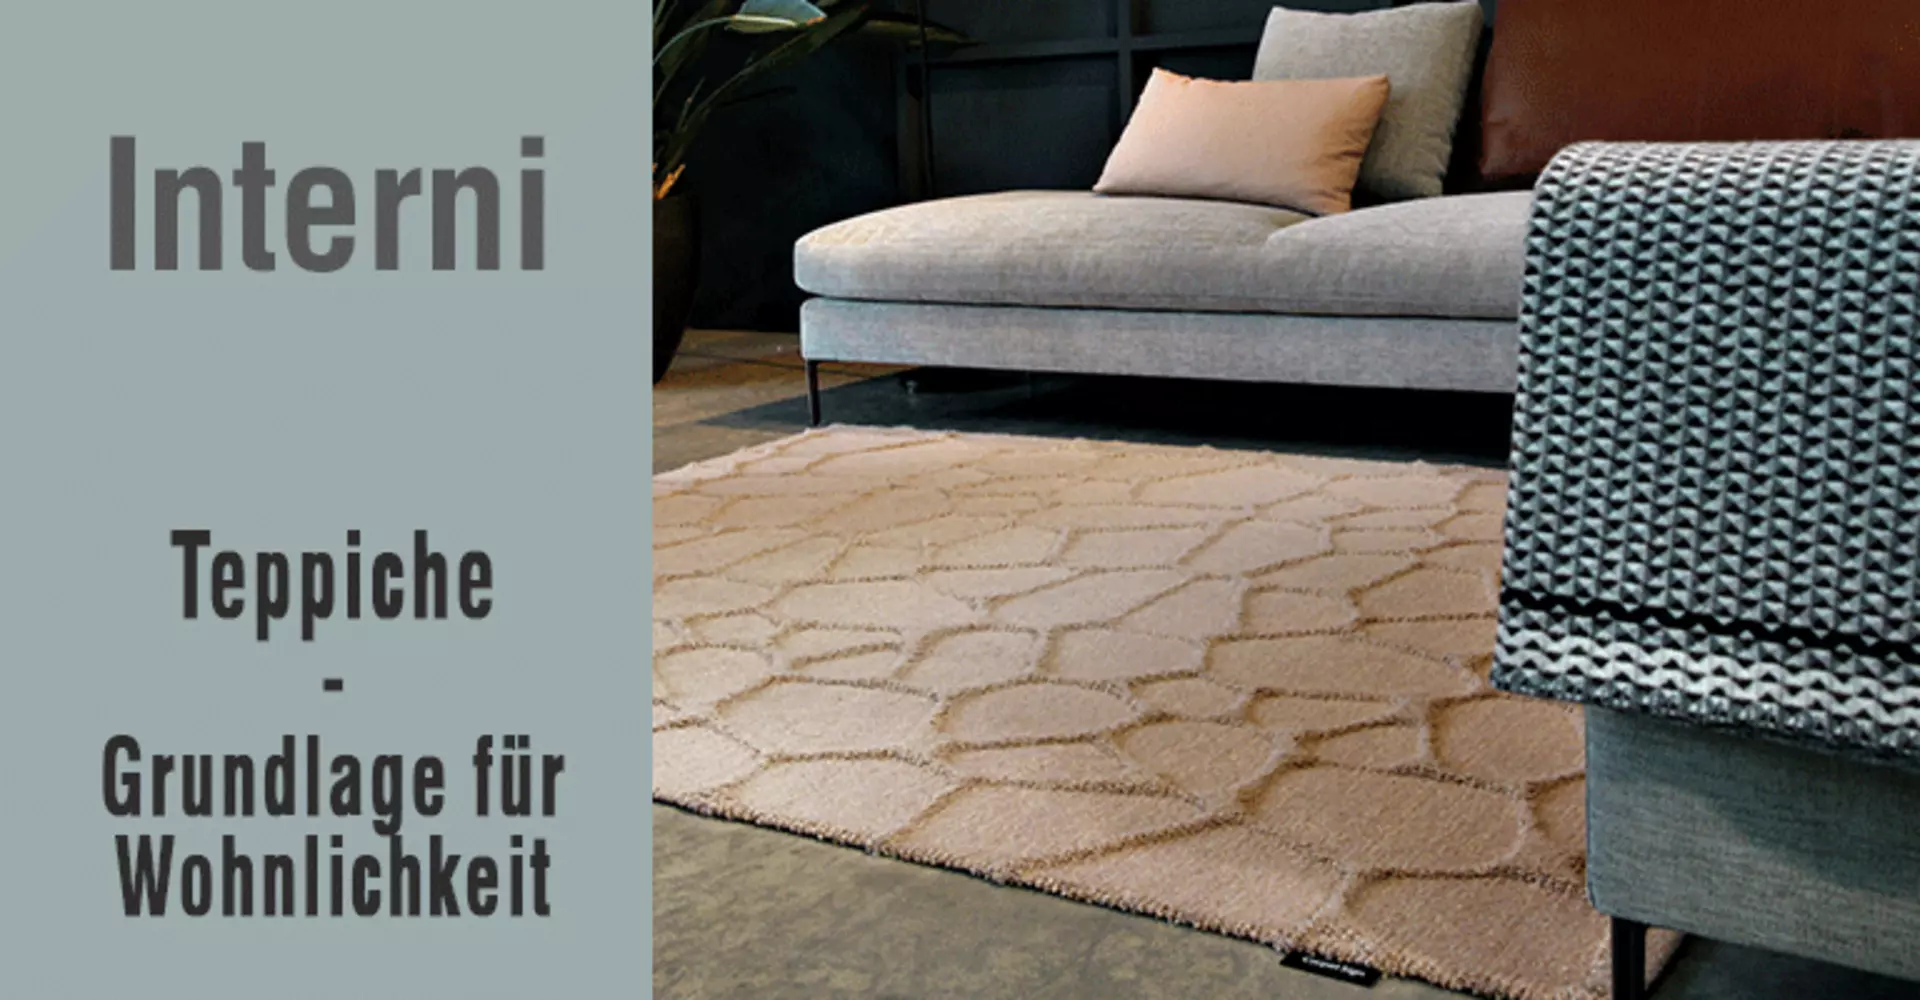 Design Teppiche - gemütliche Grundlage für Wohnlichkeit. Jetzt im Sale bei interni by inhofer